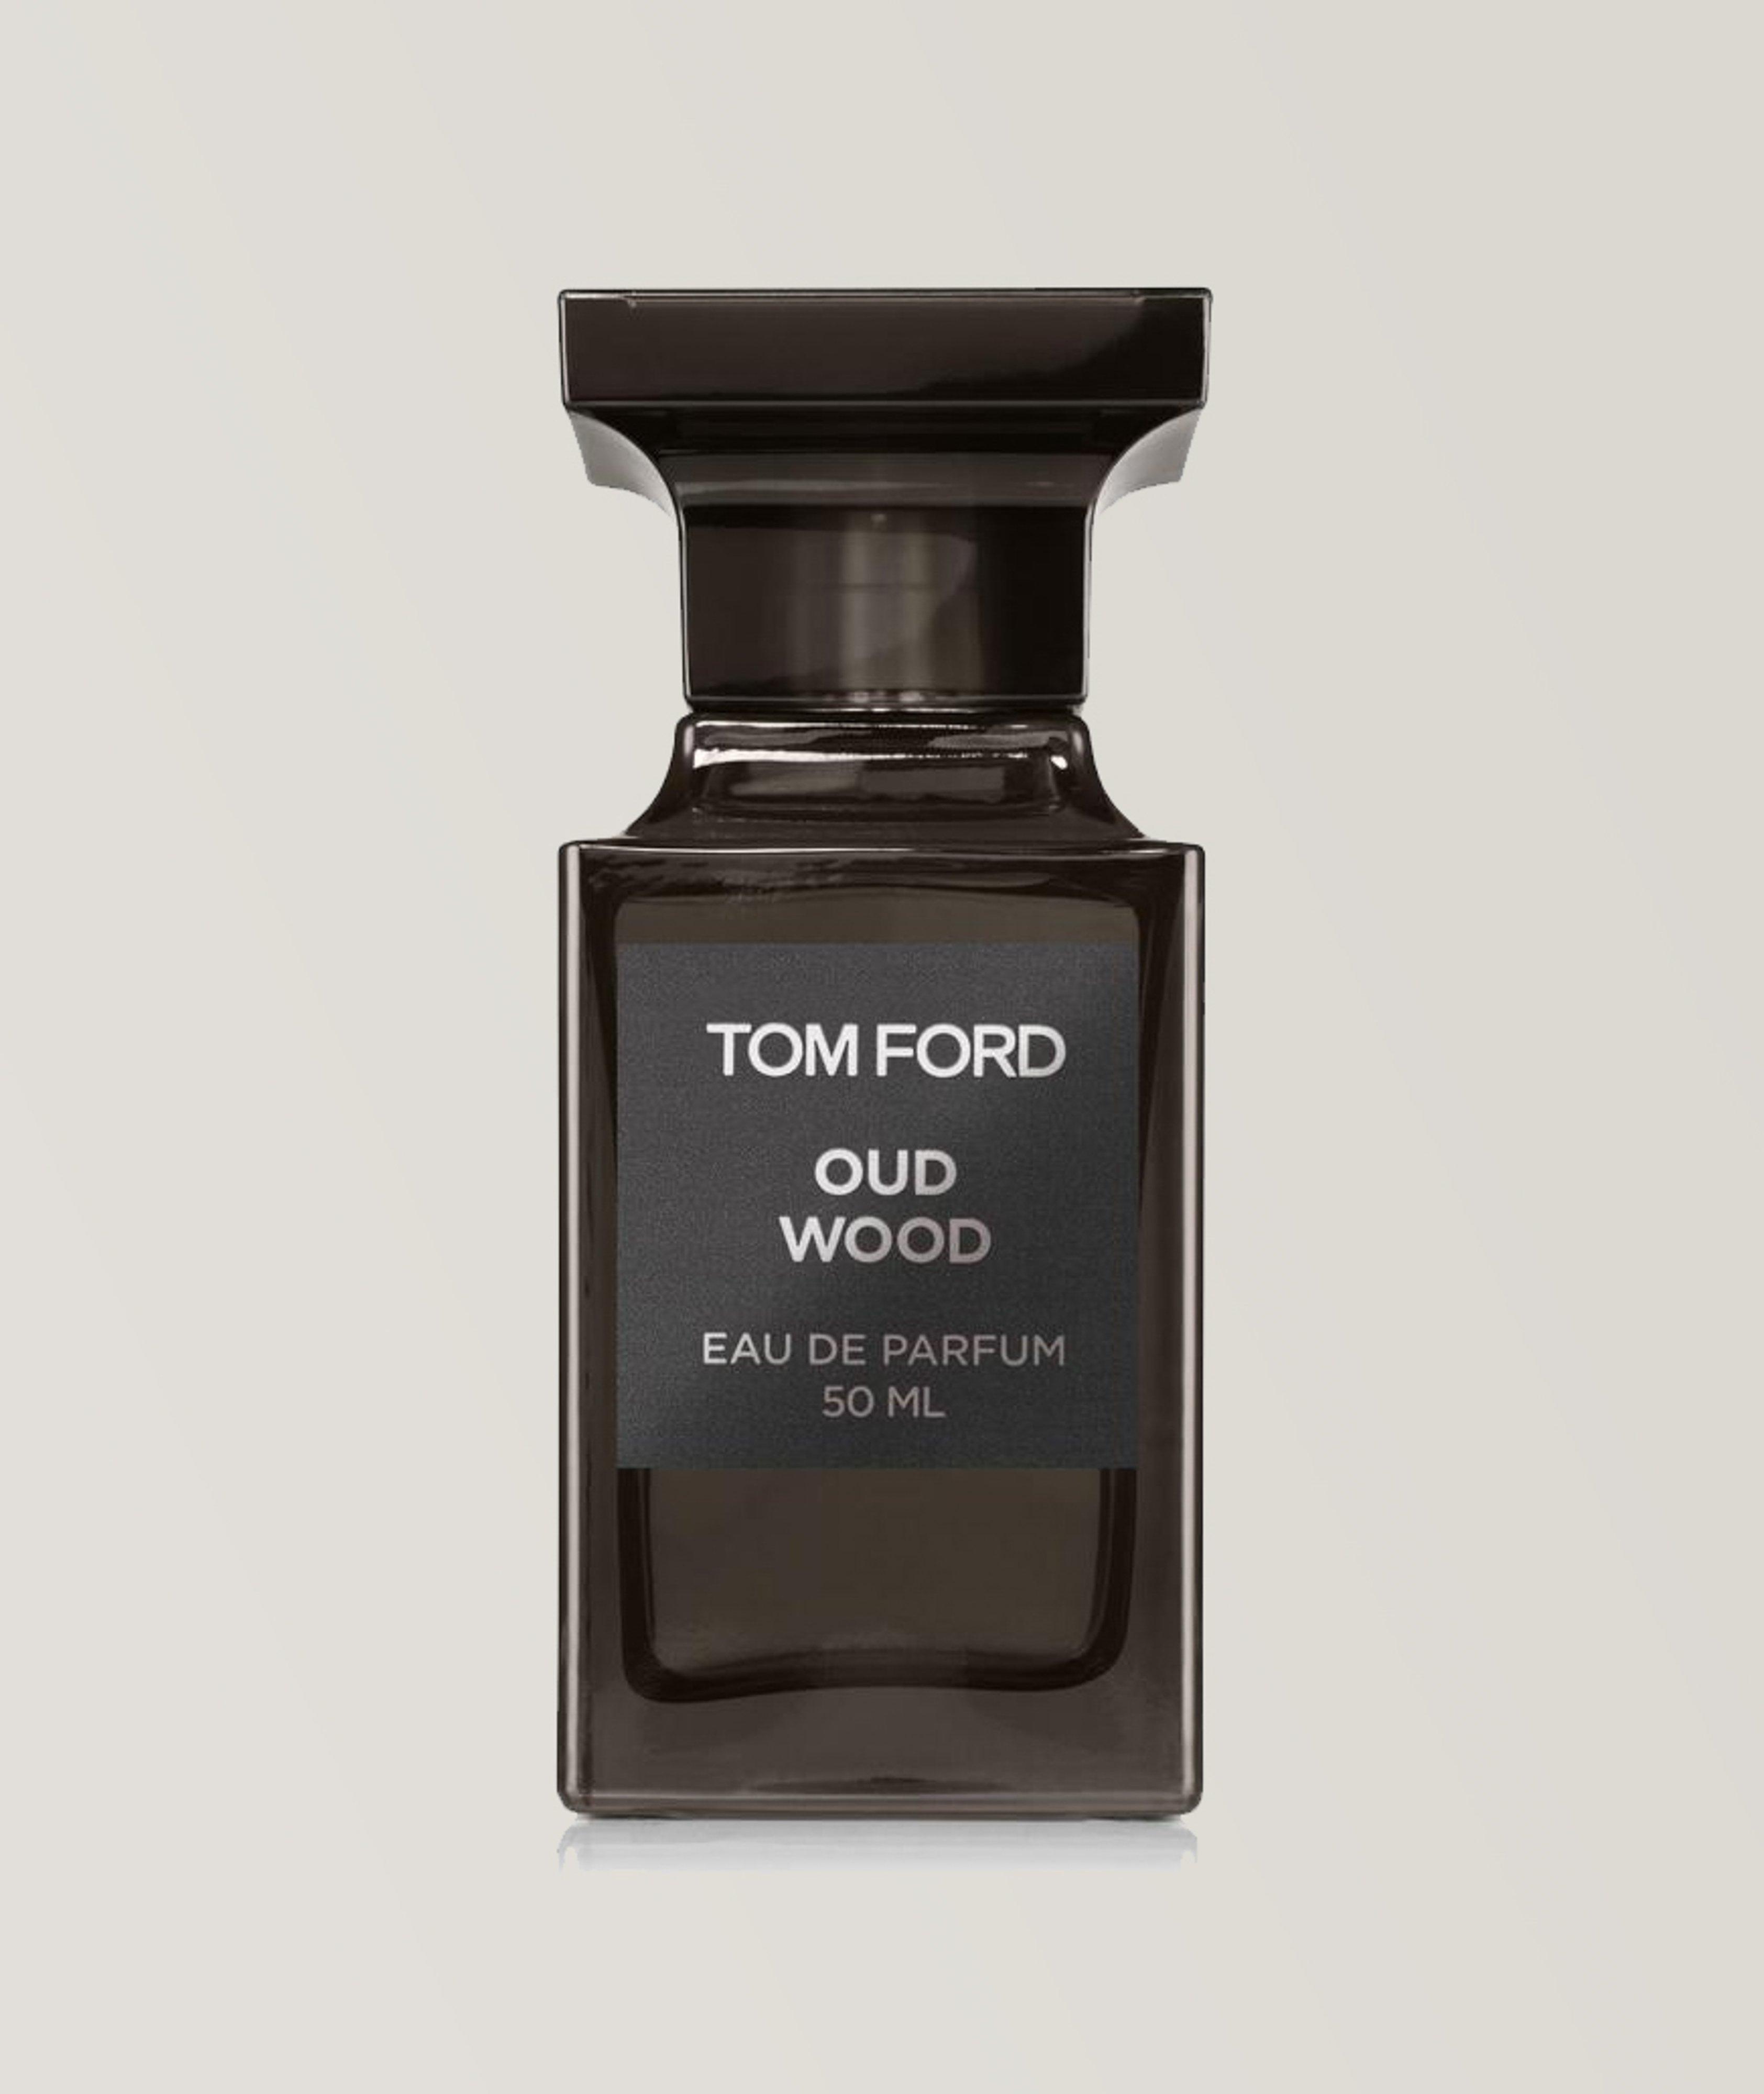 Eau de parfum Oud Wood (50 ml) image 0